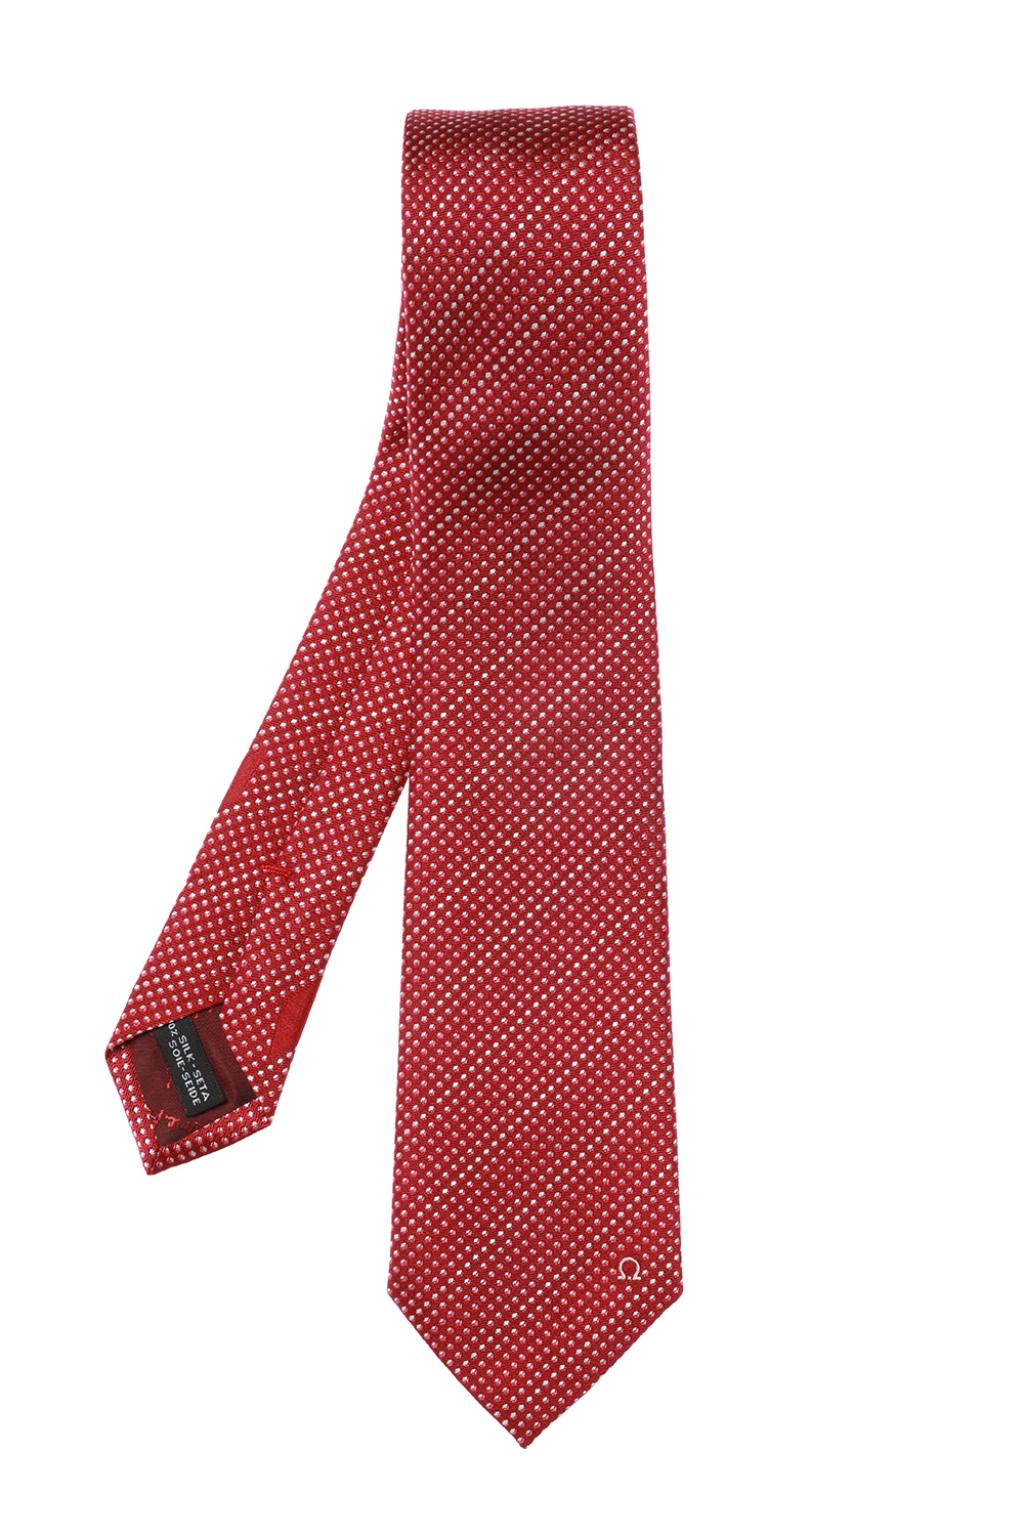 NEW SALVATORE FERRAGAMO Men's 703155 Red Tie MSRP $190